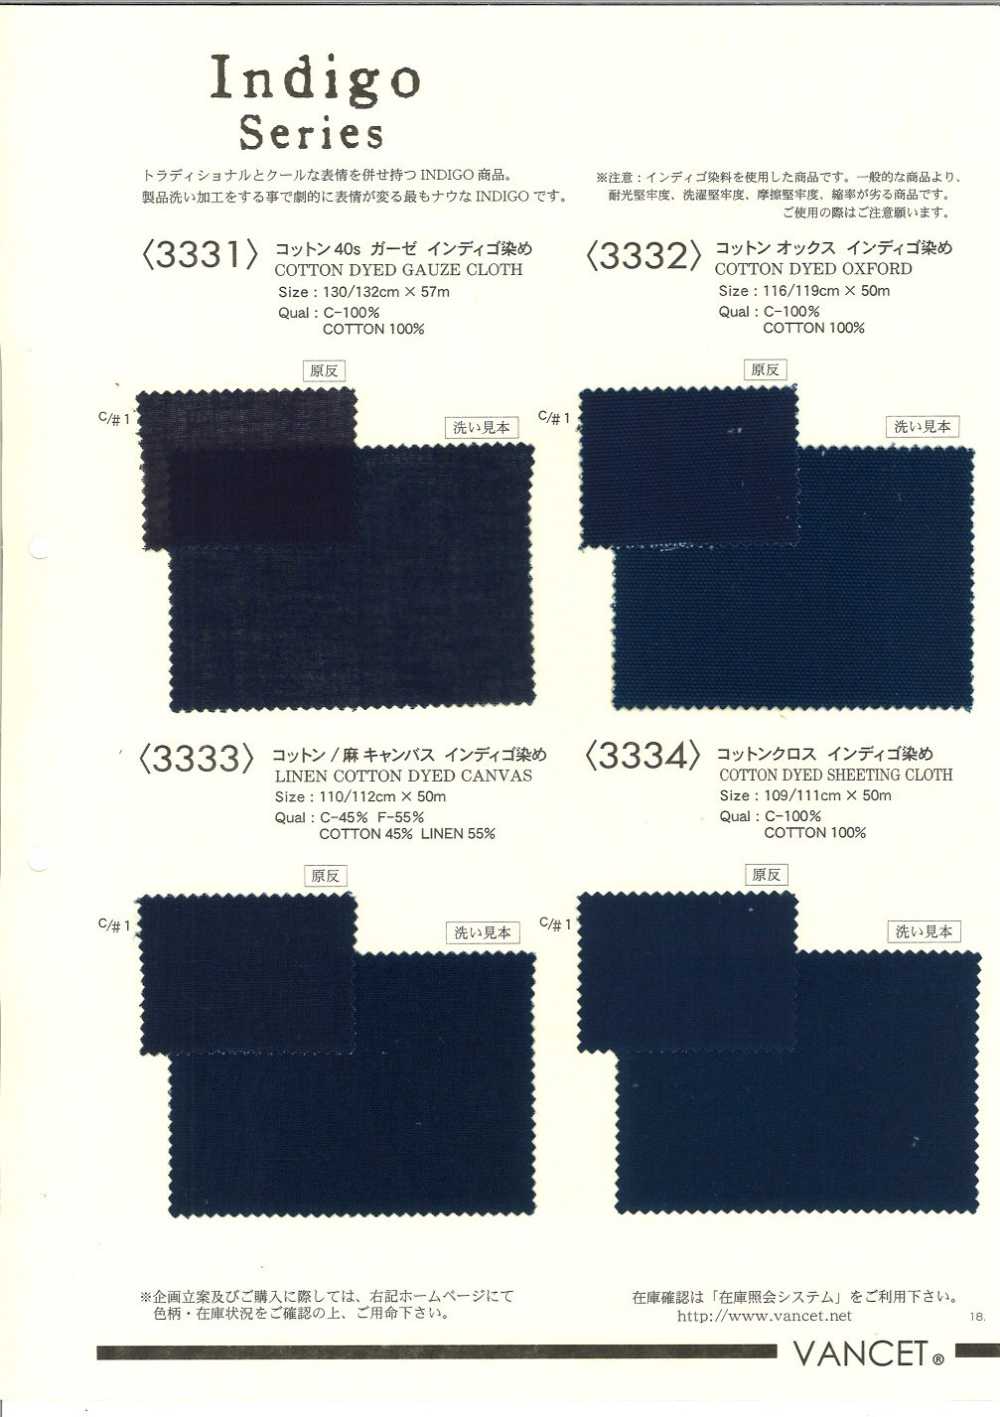 3334 Teñido Indigo De Tela De Algodón[Fabrica Textil] VANCET